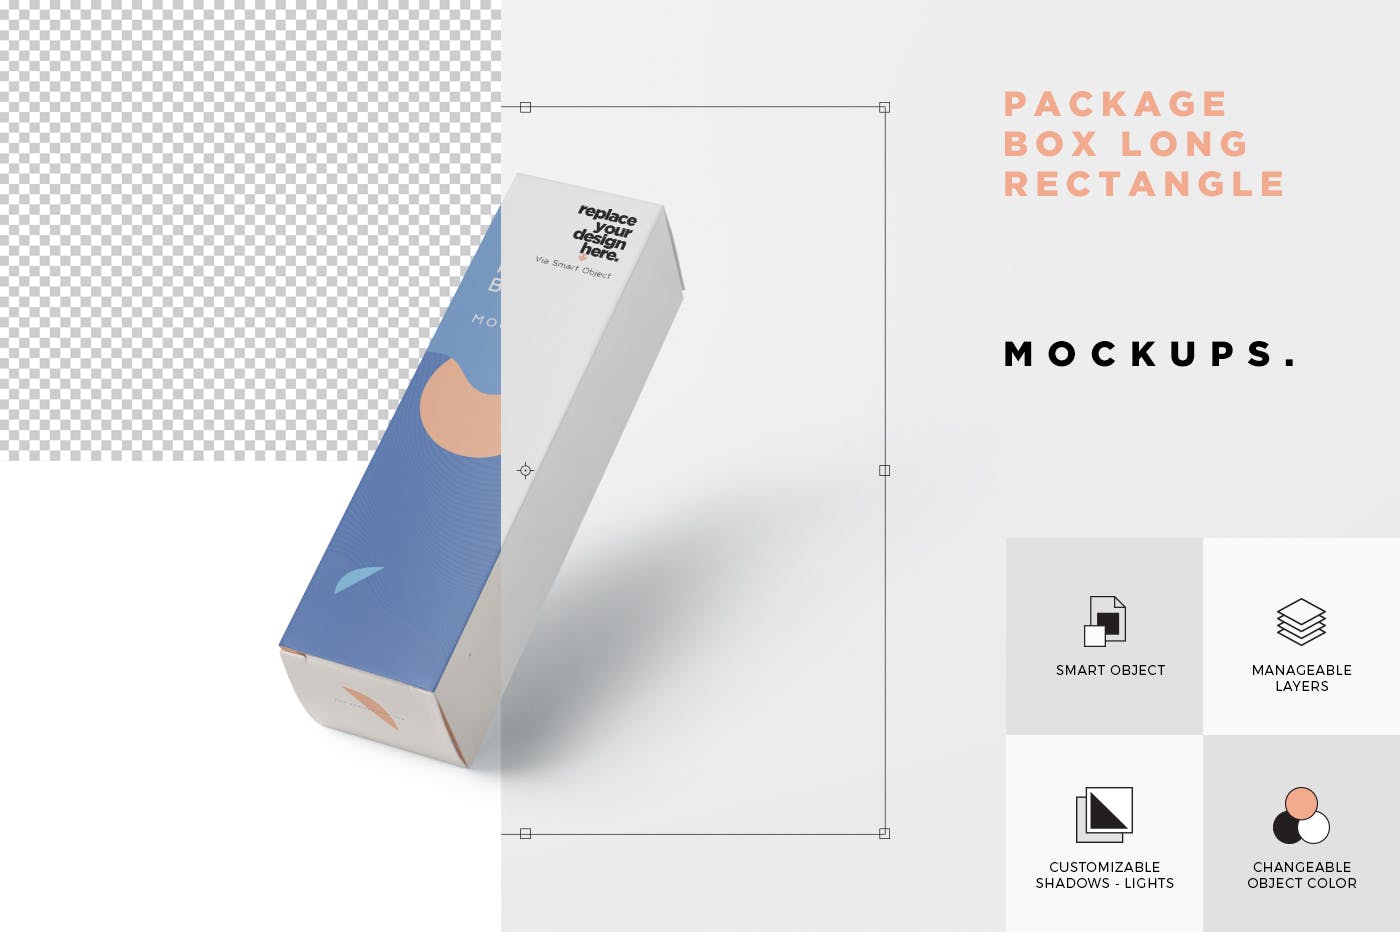 长矩形包装盒外观设计第一素材精选 Package Box Mock-Up – Long Rectangle Shape插图(4)